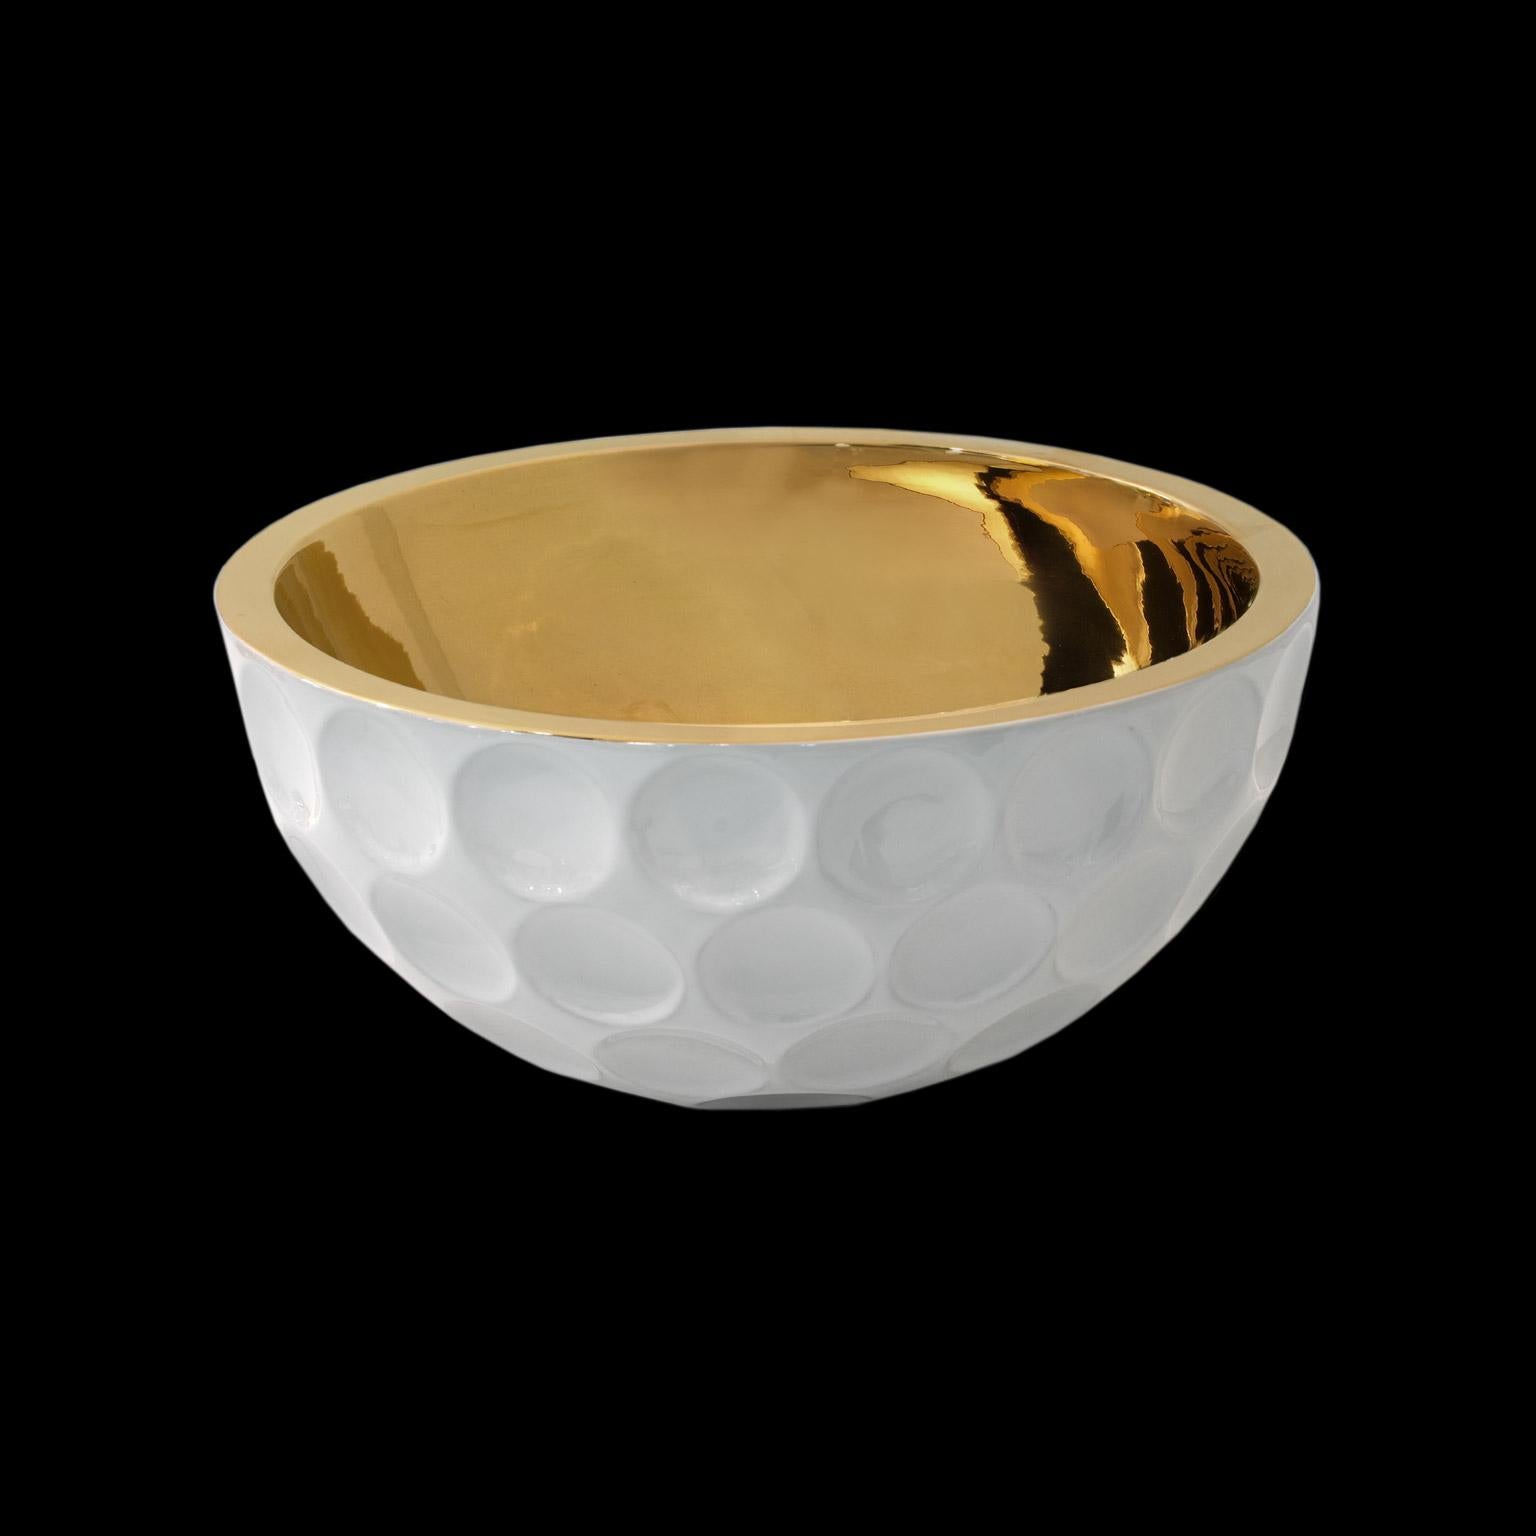 Keramische Golfschale EAGLE
kabeljau. HB040 
handgefertigt aus 24-karätigem Gold im Inneren 
und außen weißer Emaille

maßnahmen: 
Höhe 20,0
Durchmesser 40,0 cm.  

        